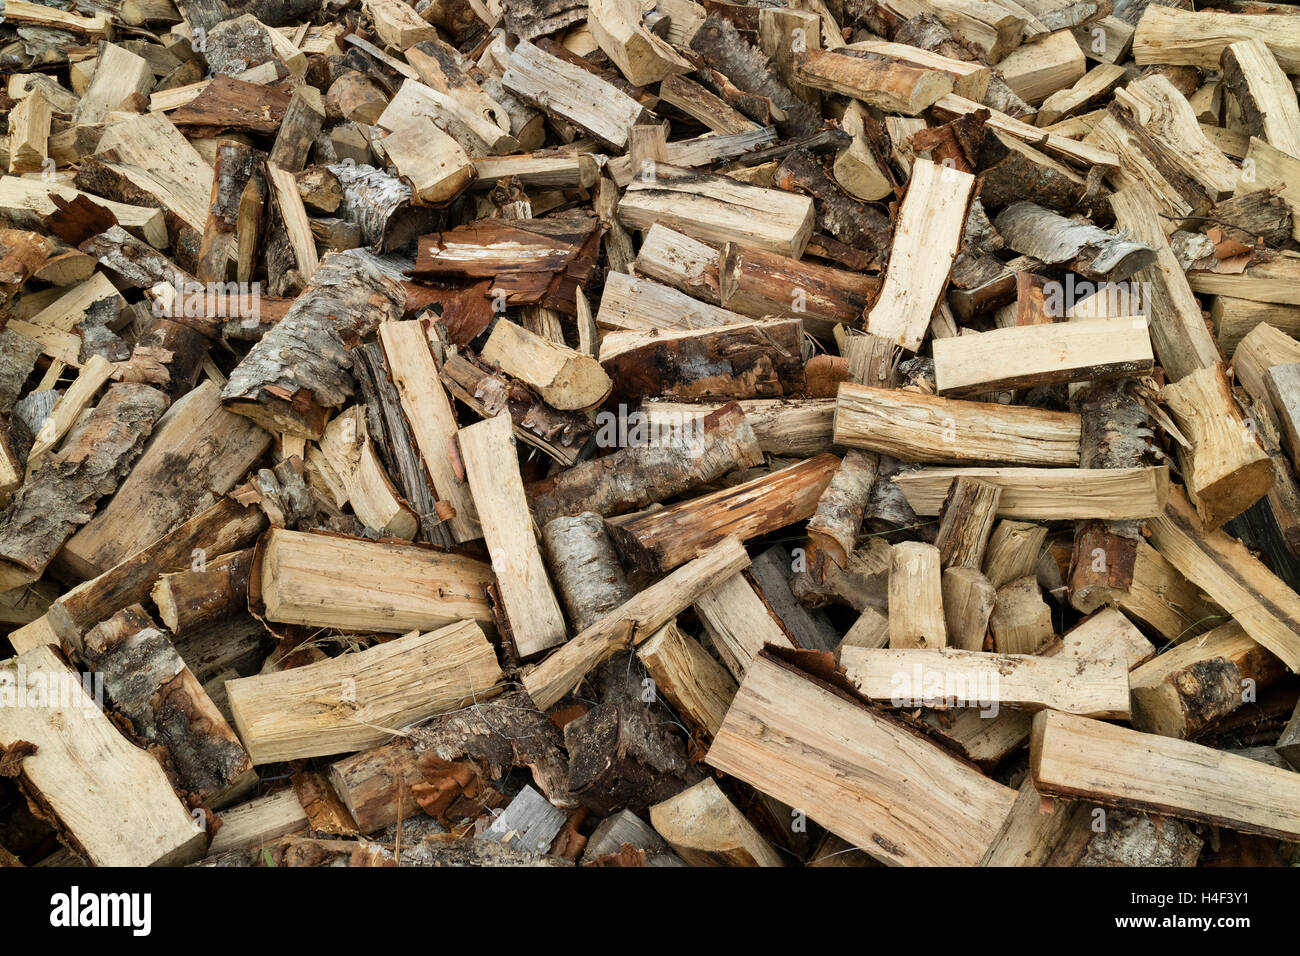 Legna da ardere pila di talee di legno per riscaldamento Foto Stock